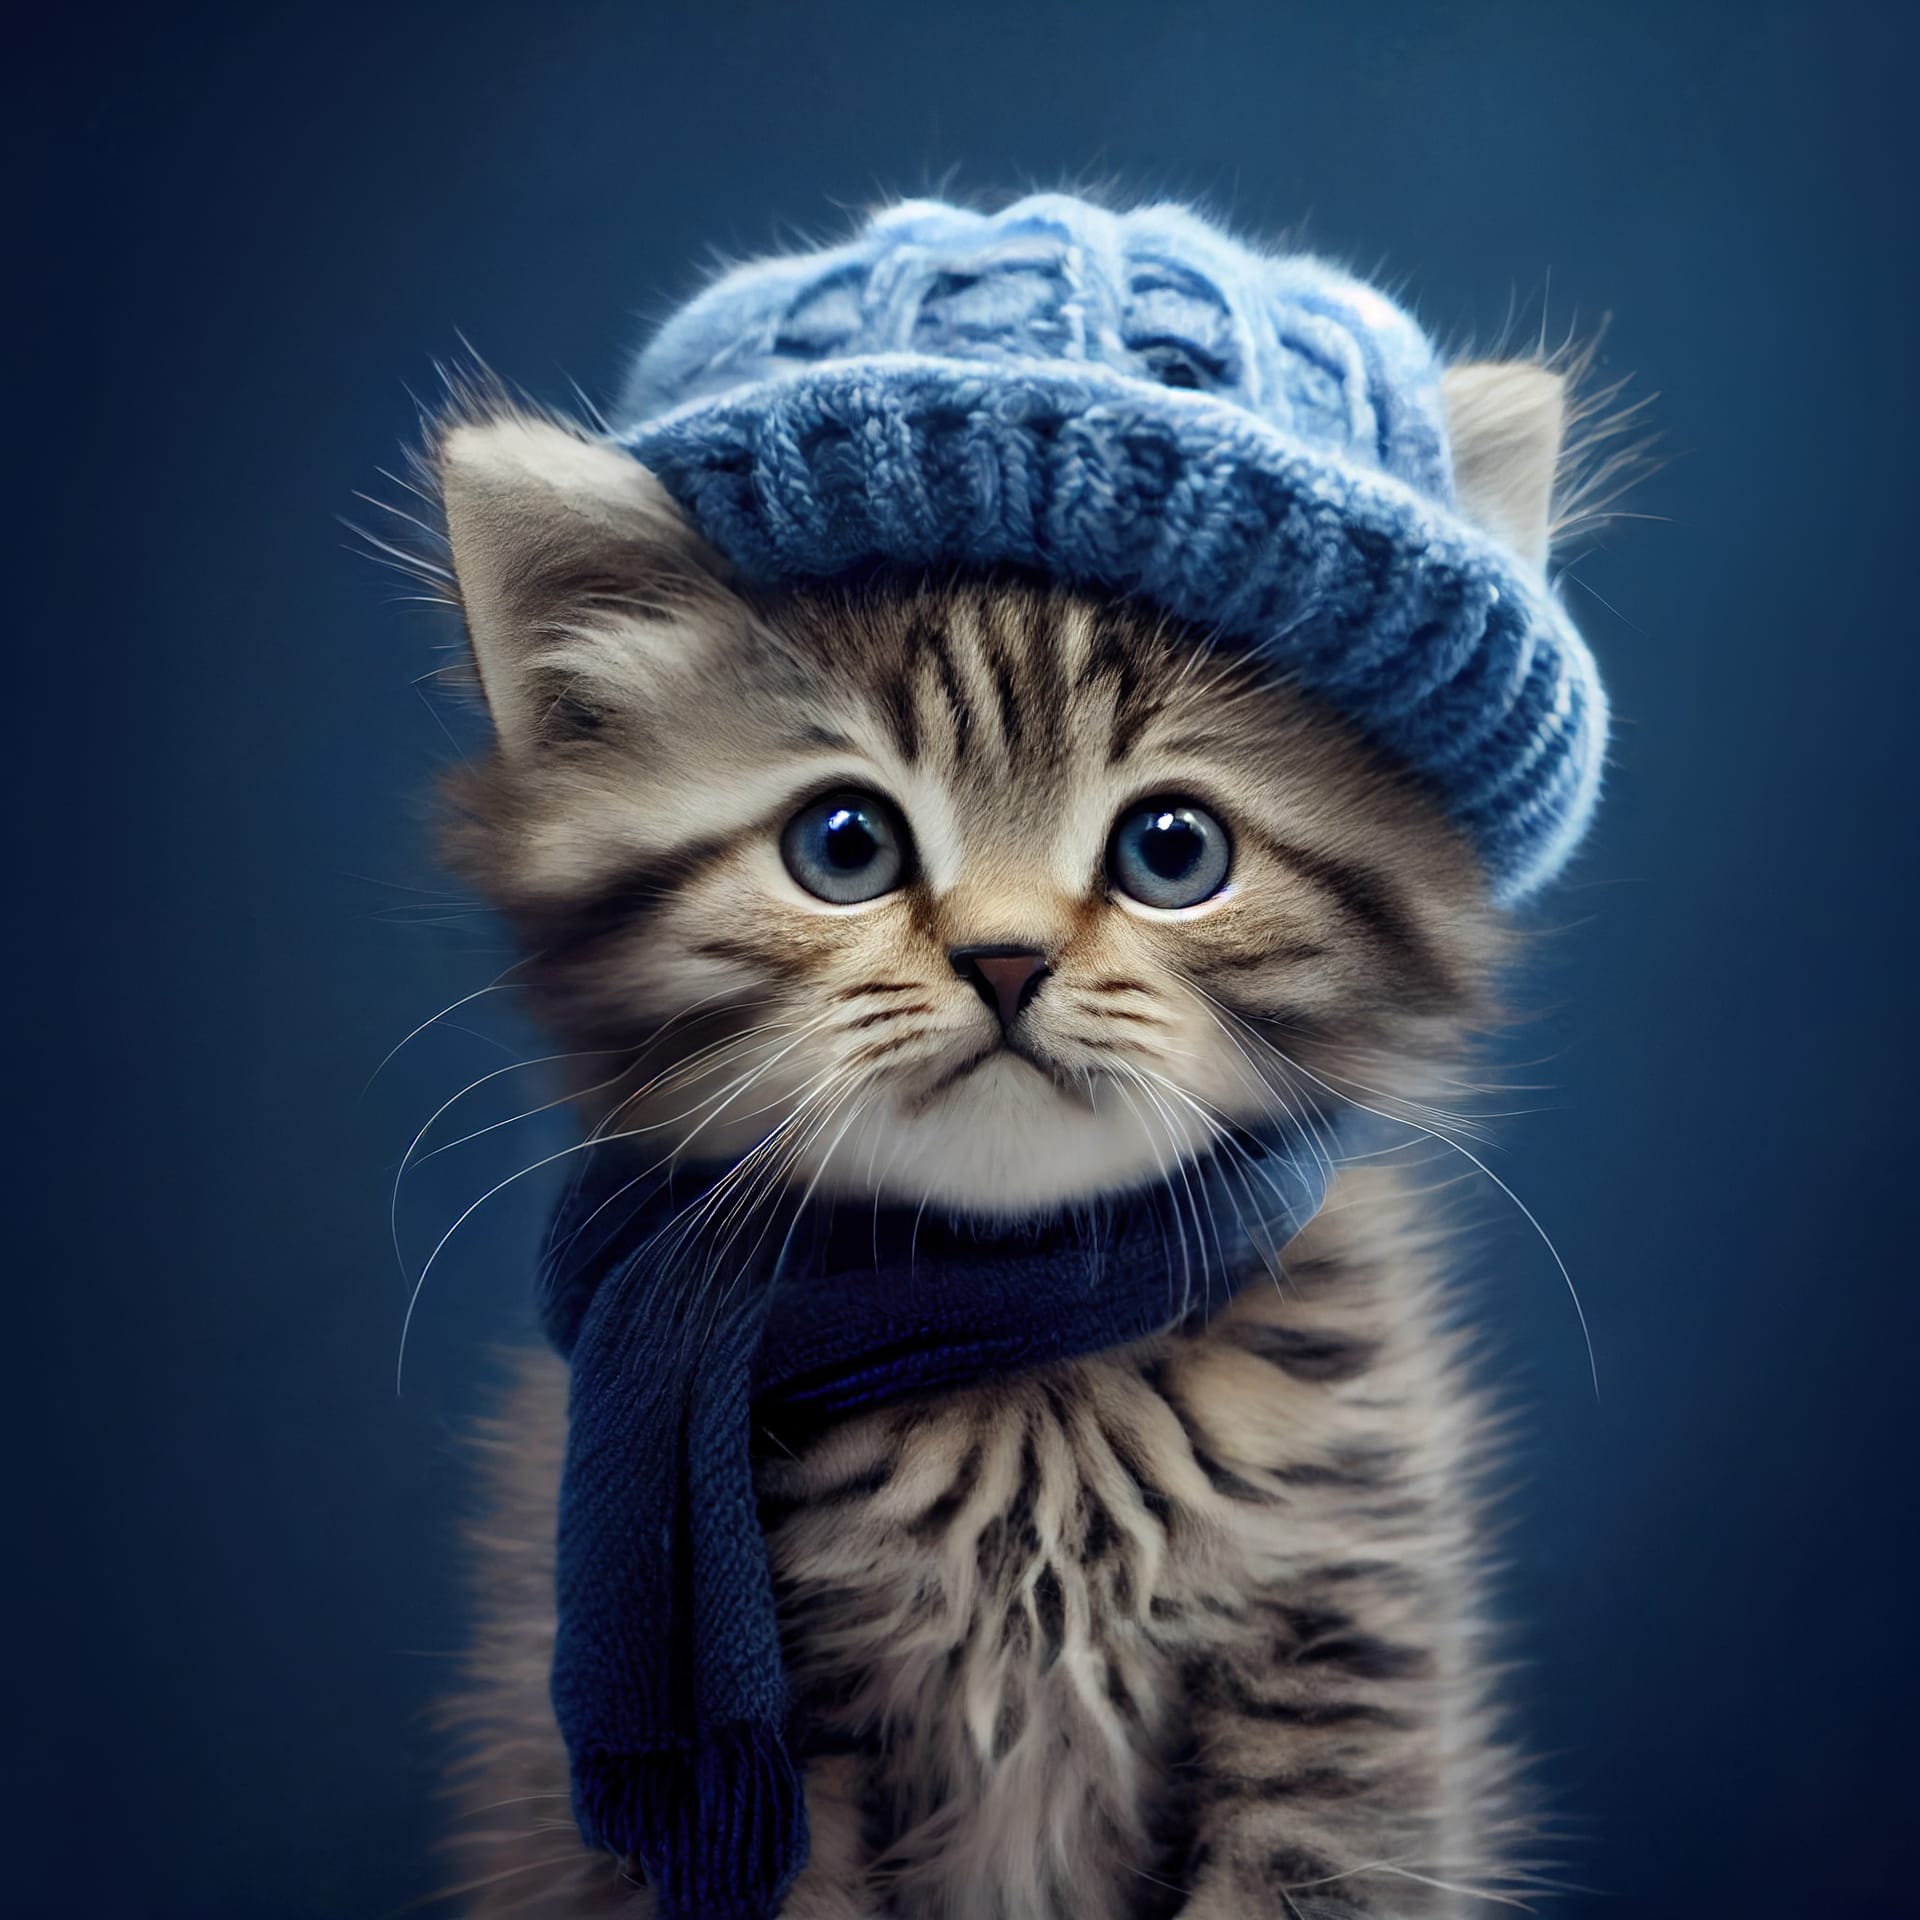 Cute kitten wearing scarf warm hat cat photo